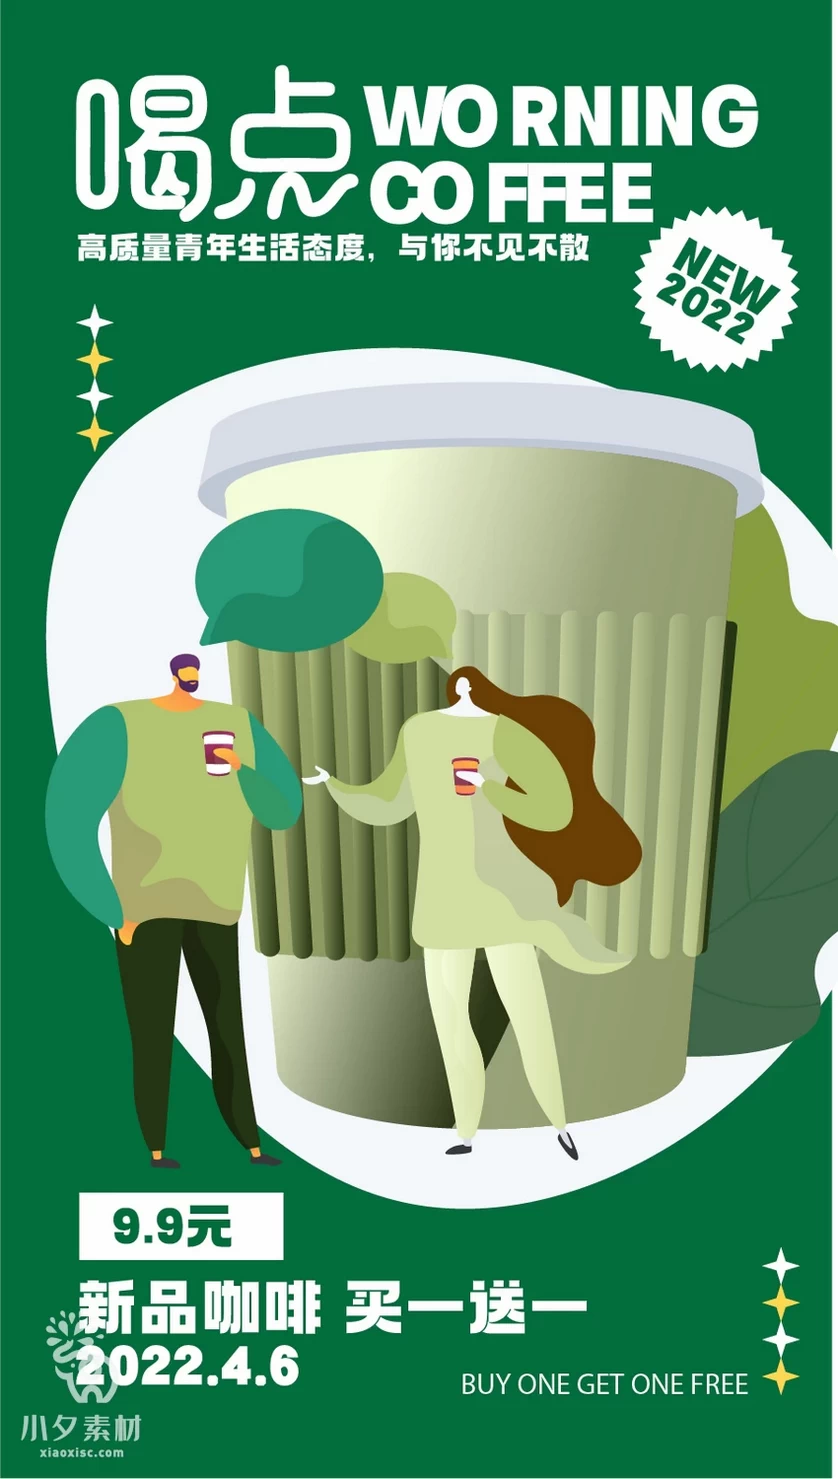 潮流创意咖啡饮品艺术节活动宣传促销海报展板模板AI矢量设计素材【005】